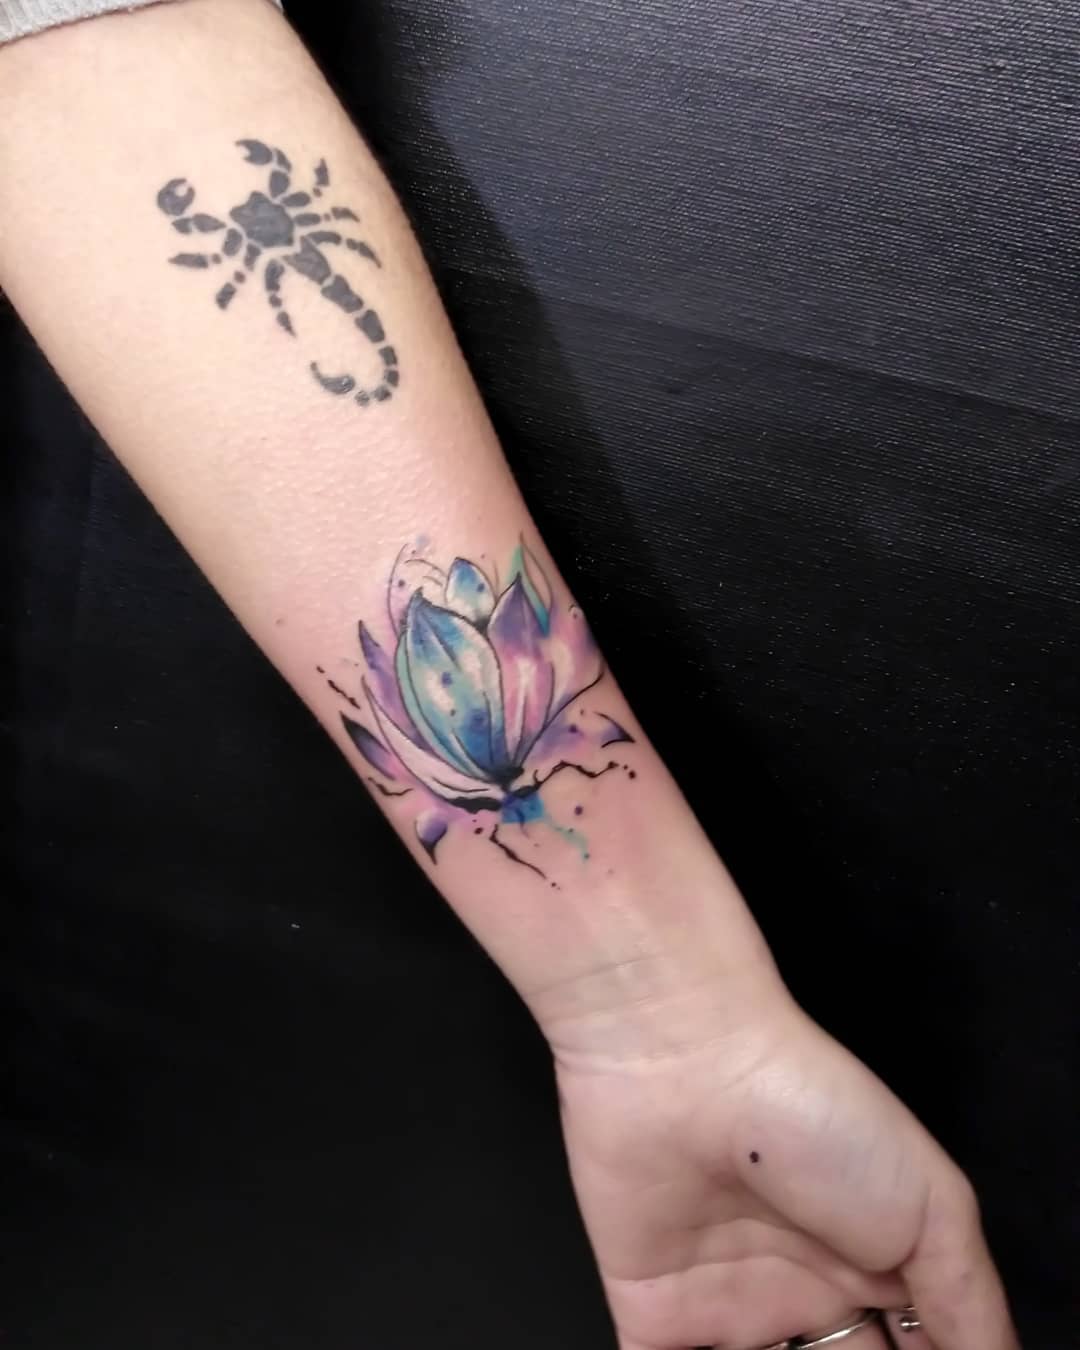 fiore di loto tattoo watercolor by @domenicoperulli tattooer